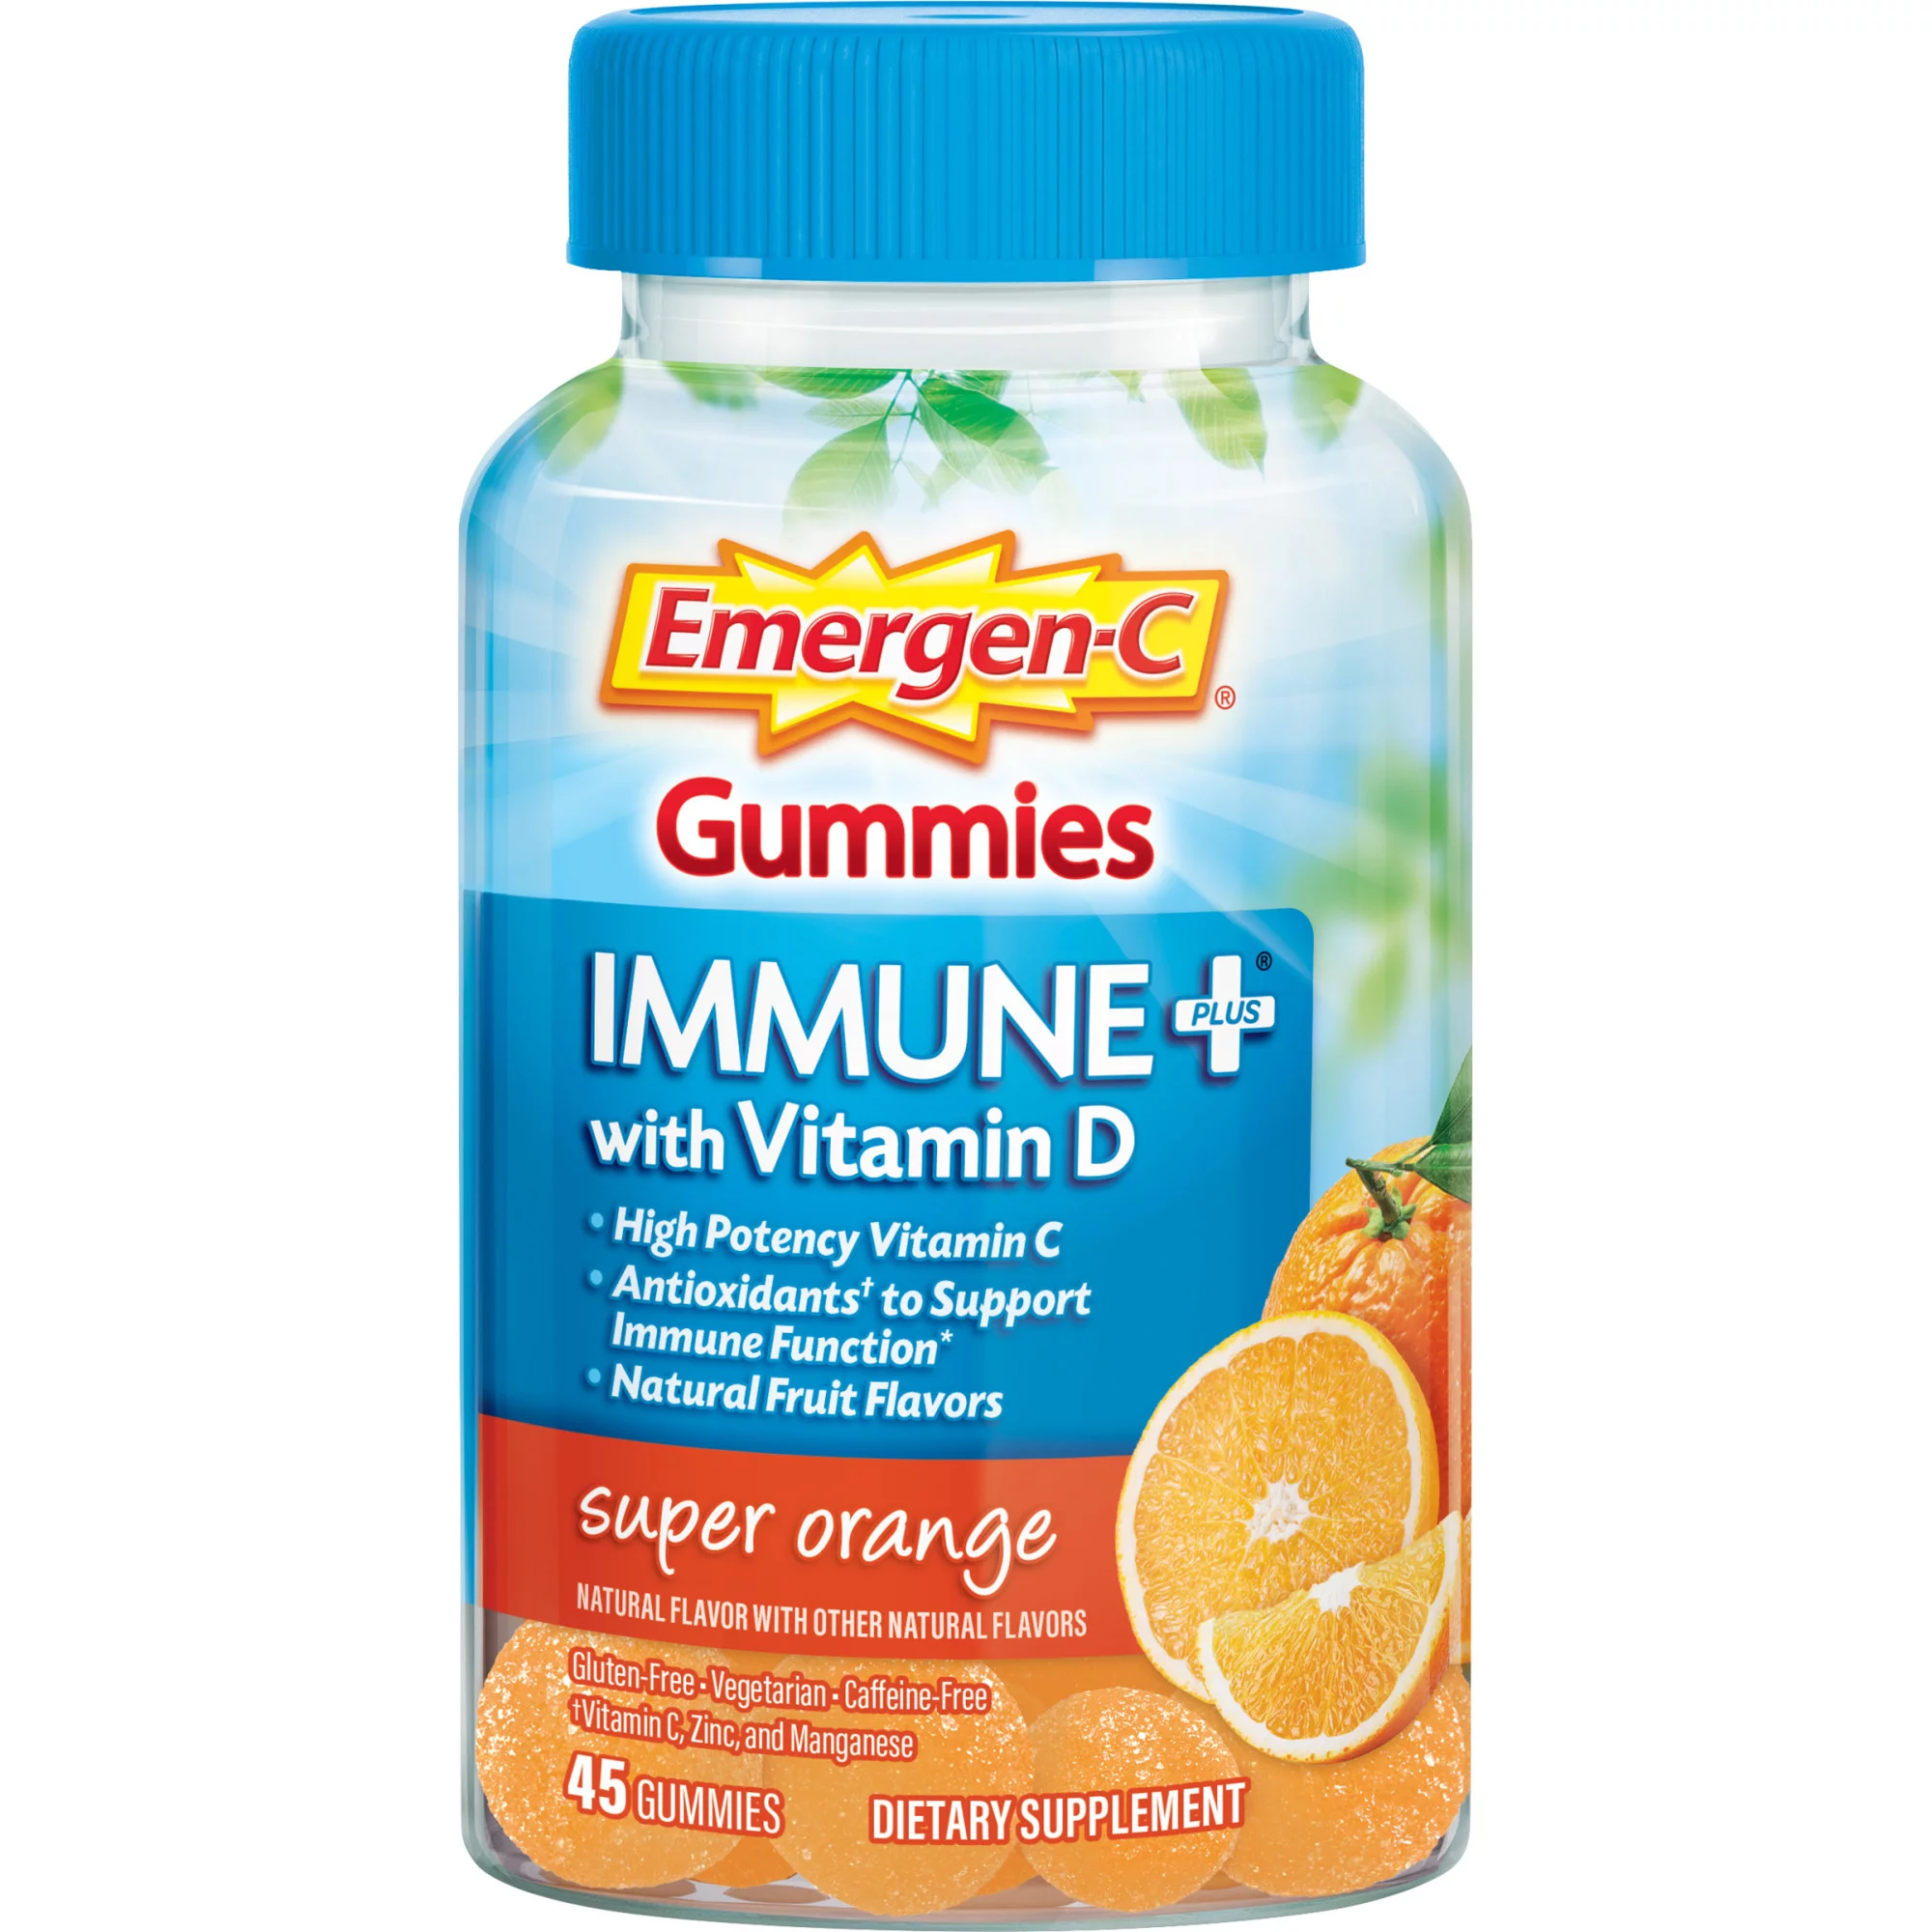 Emergen-C Immune Plus Vitamin D and C Gummies, Super Orange, 45 ct